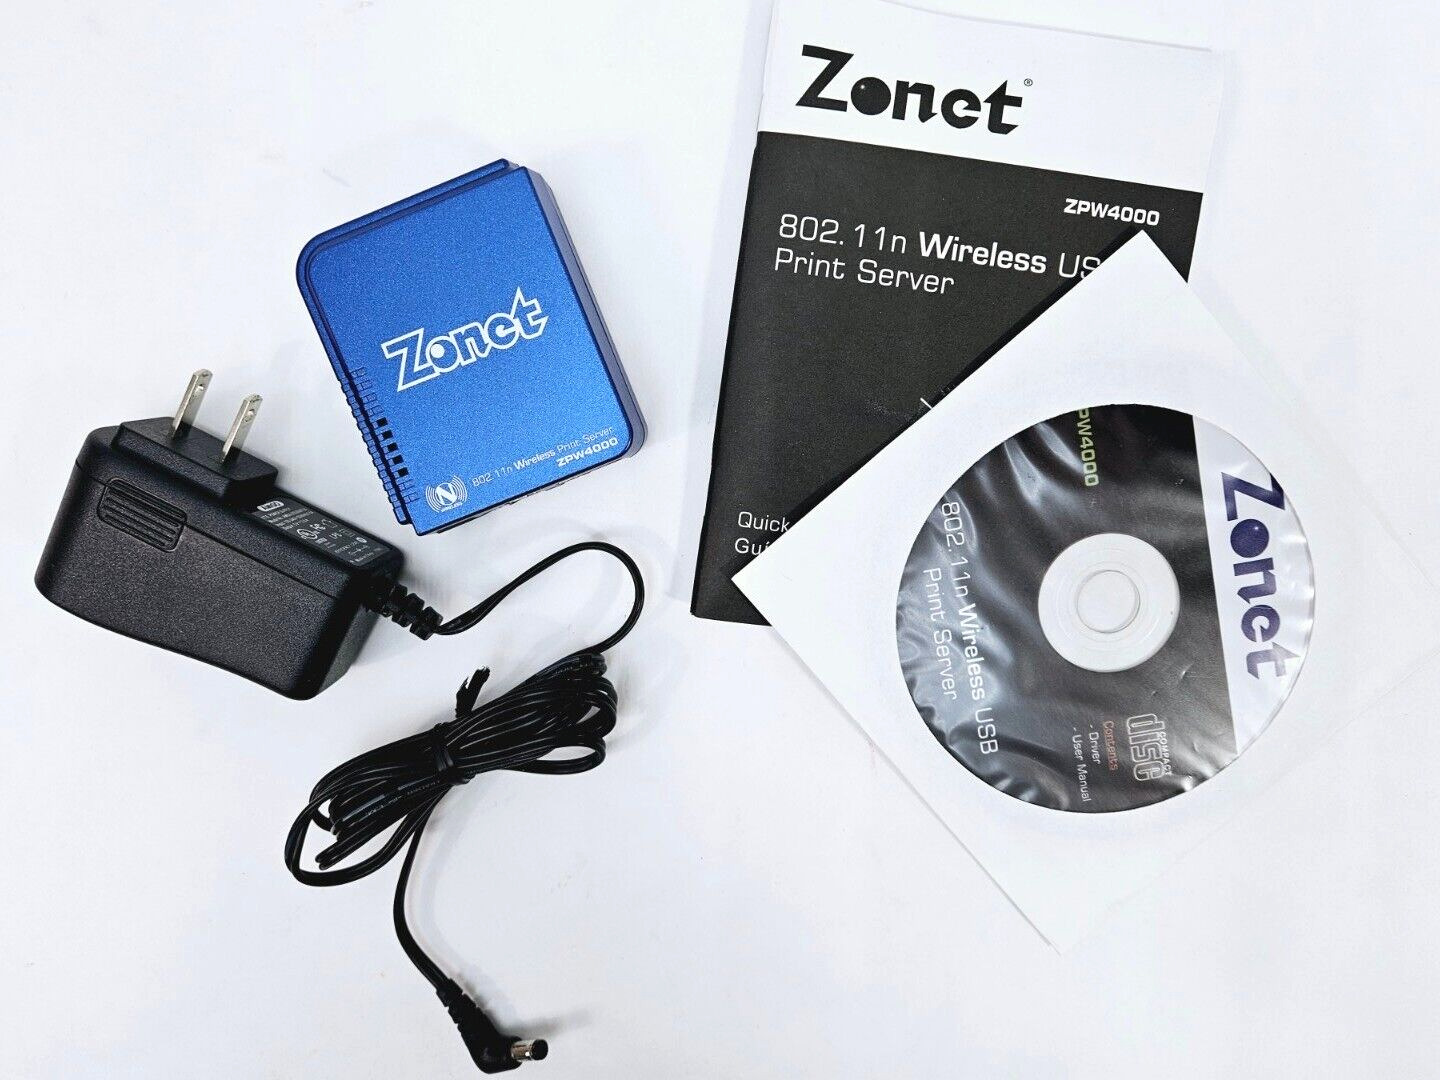 Zonet 802.11n Wireless USB Print Server ZPW4000